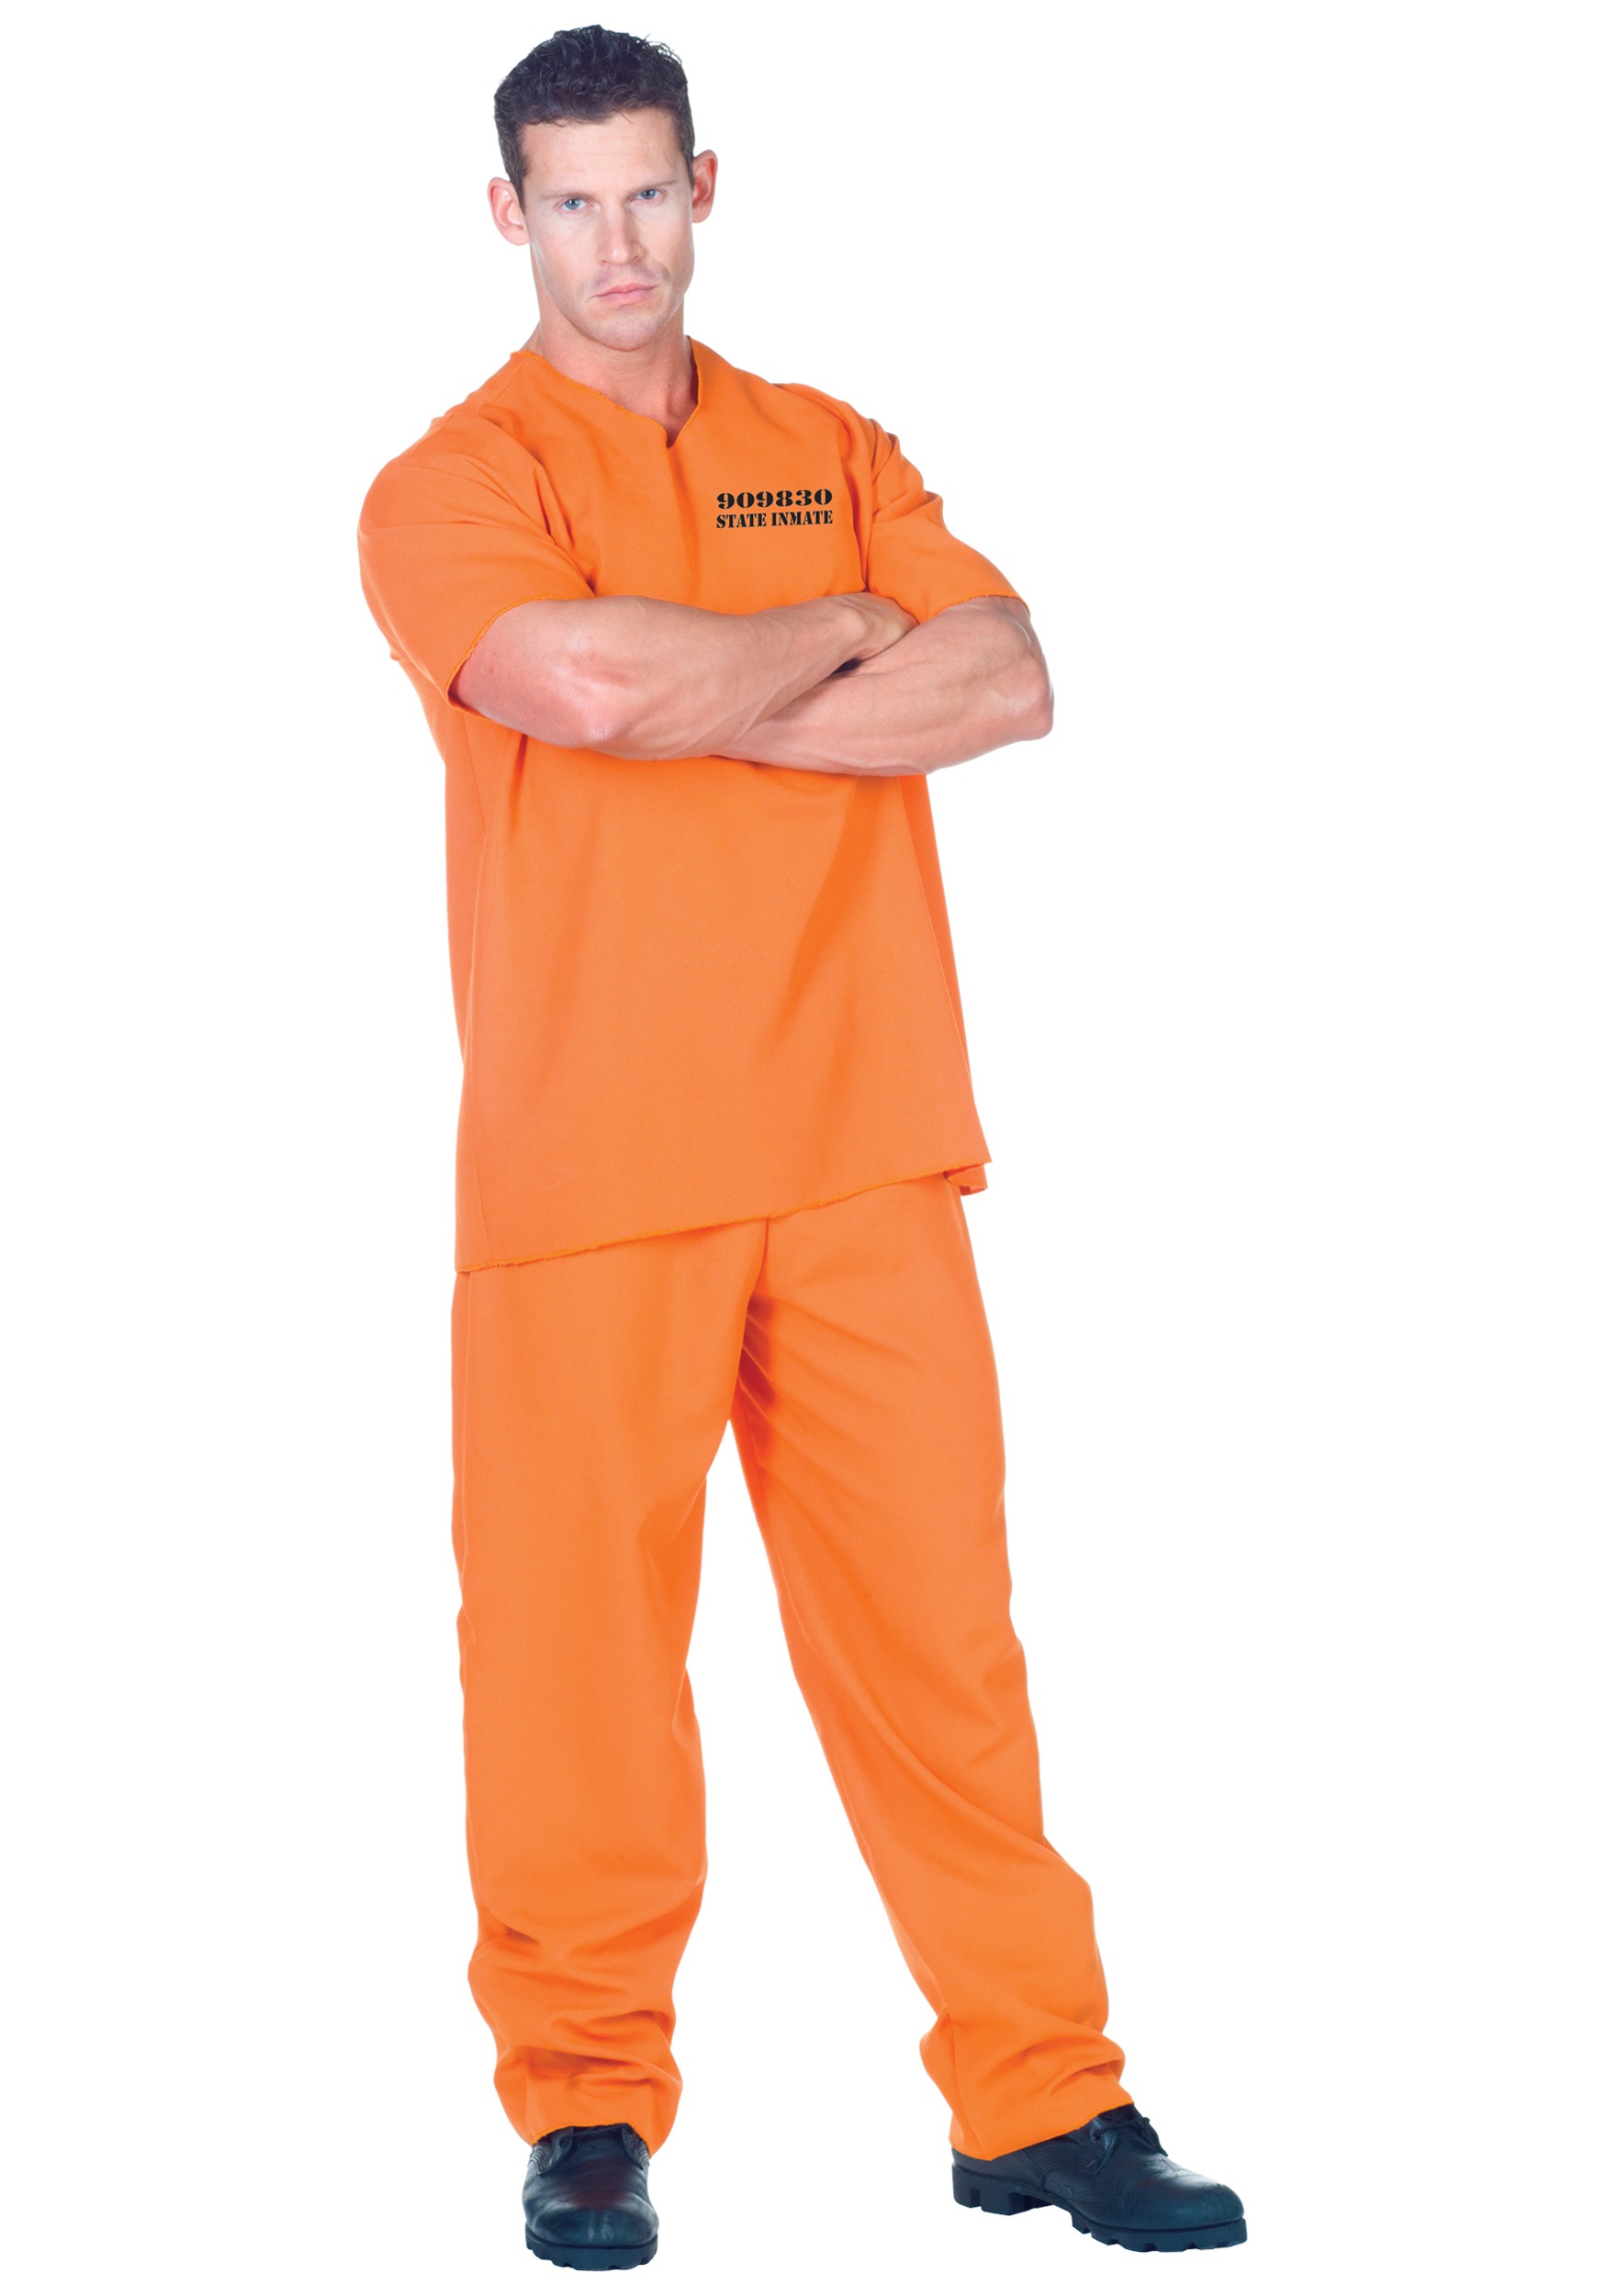 Plus Size Orange Jumpsuit Prisoner Fancy Dress Costume For Adults